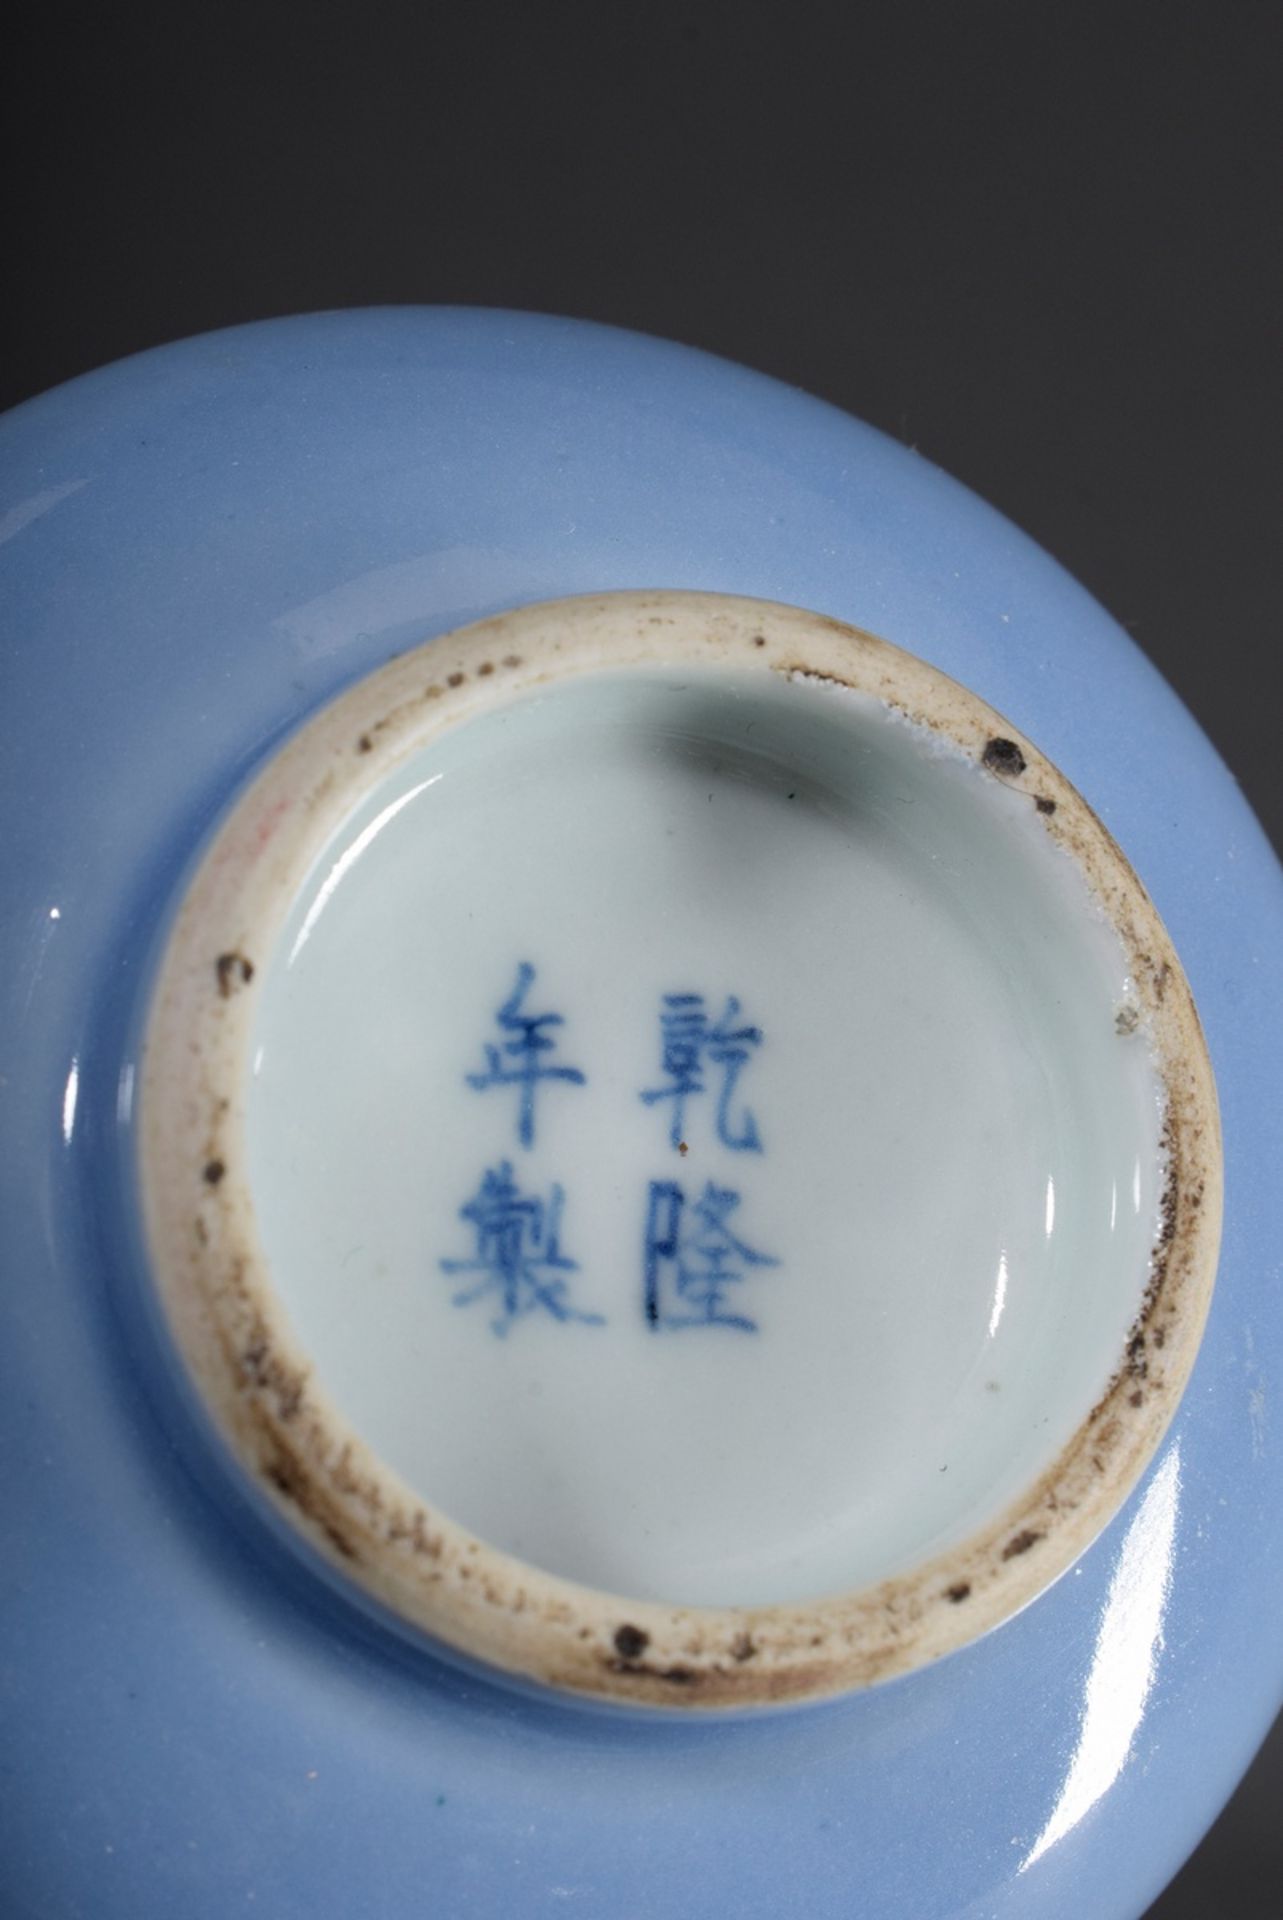 Chinesisches Porzellan Väschen in gestauchter Kn | Chinese porcelain vase in compressed garlic form - Bild 3 aus 4